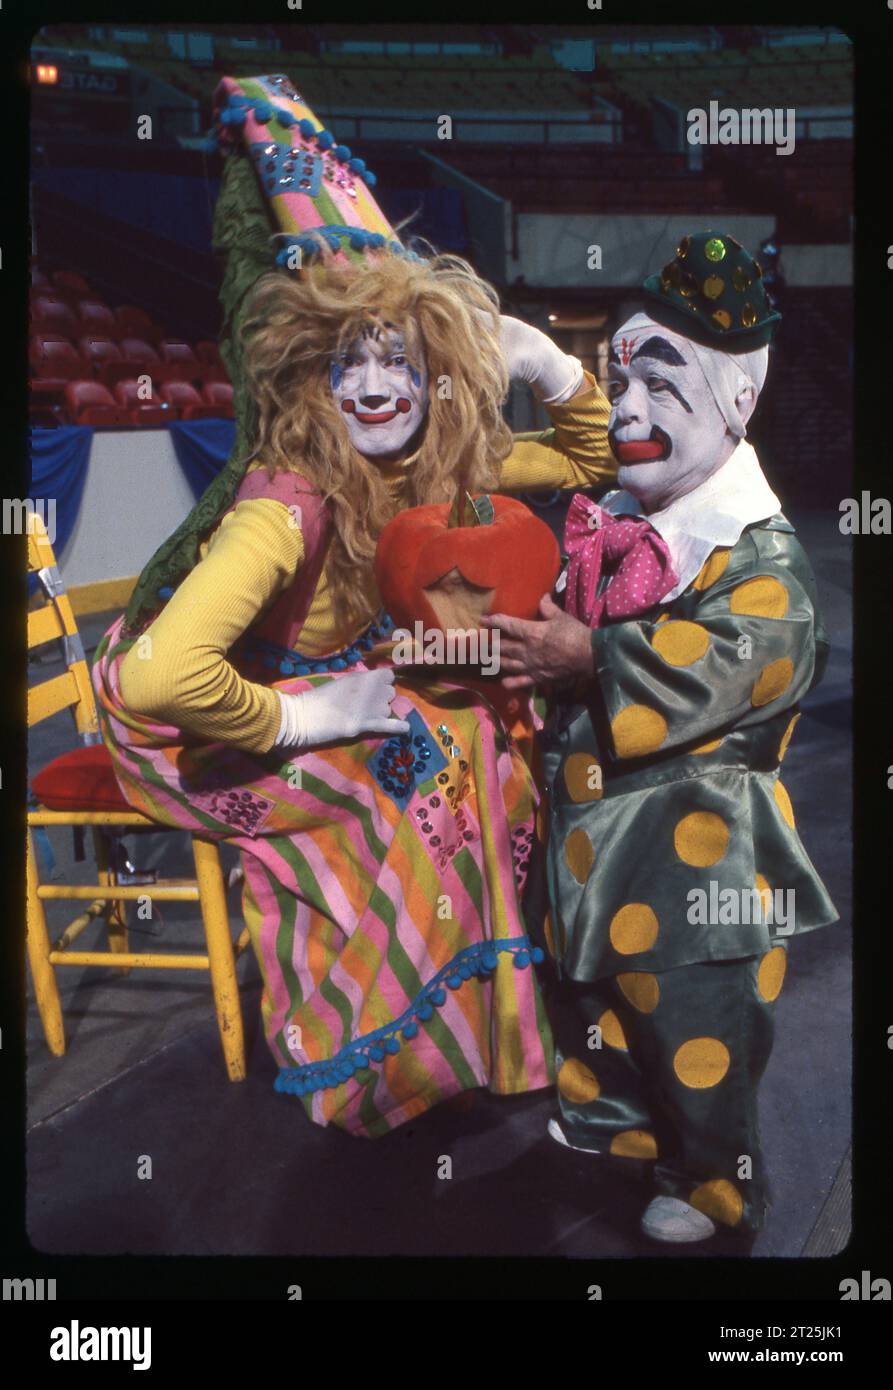 Photo de 2 clowns Ringling Brothers en maquillage complet tenant une citrouille qui semble avoir été mordue. Auditions au Clown College en 1979. Le clown à droite est le prince Paul. Banque D'Images